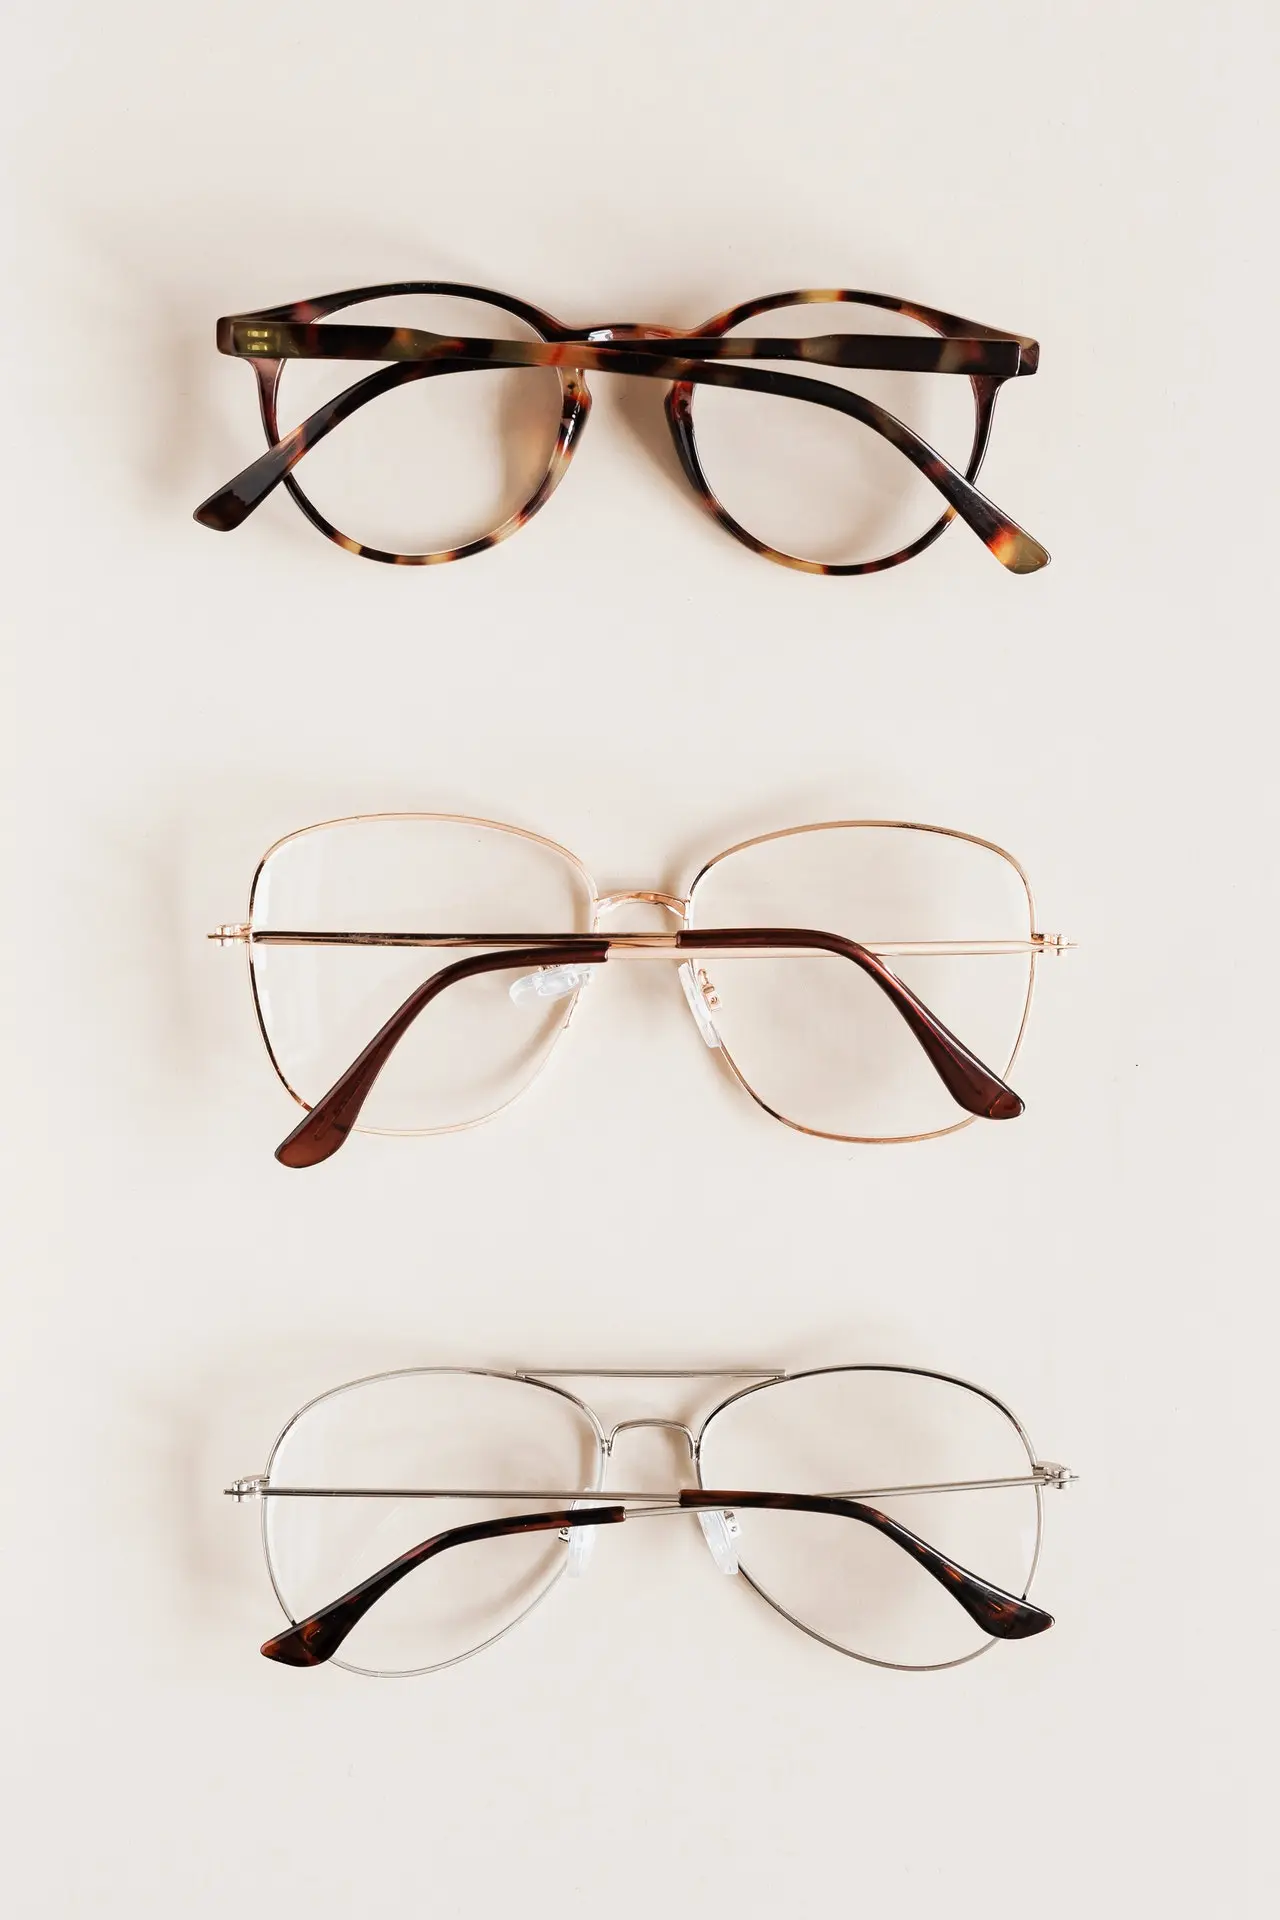 Curatarea ochelarilor - ce produse sa NU folosesti pentru curatarea ochelarilor